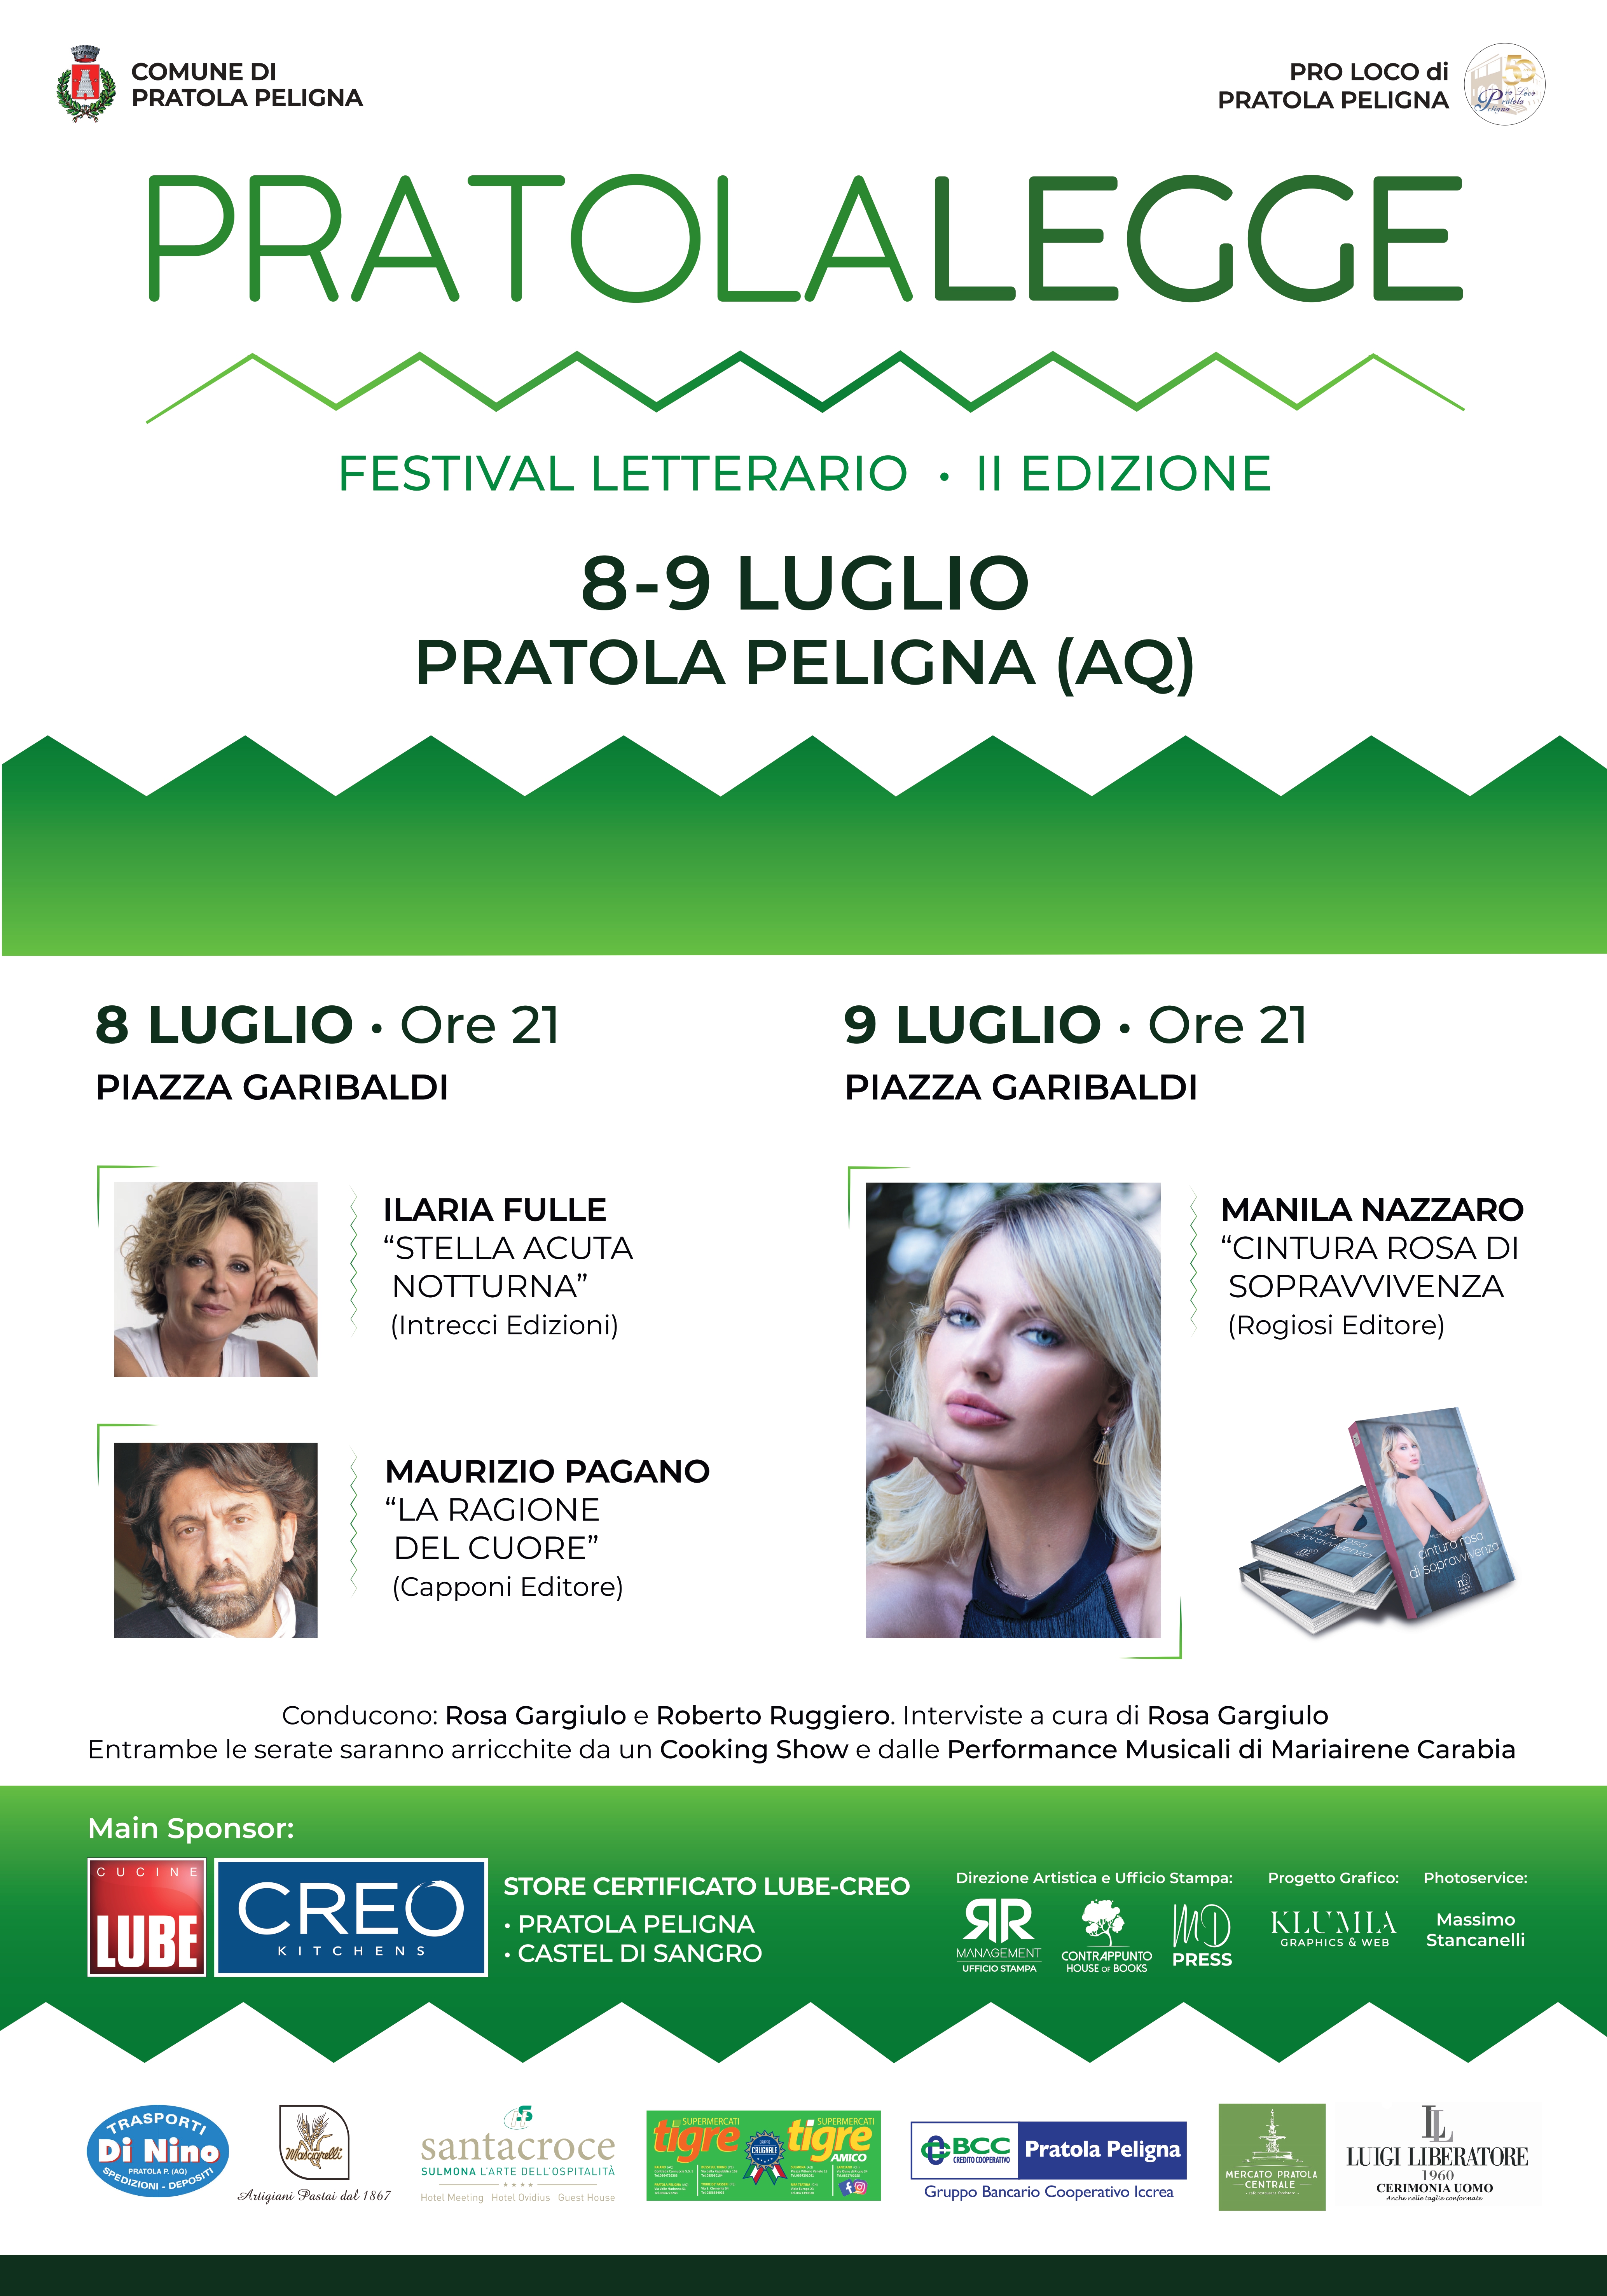 PratolaLegge: l'8 e 9 luglio la 2° edizione del Festival Letterario 